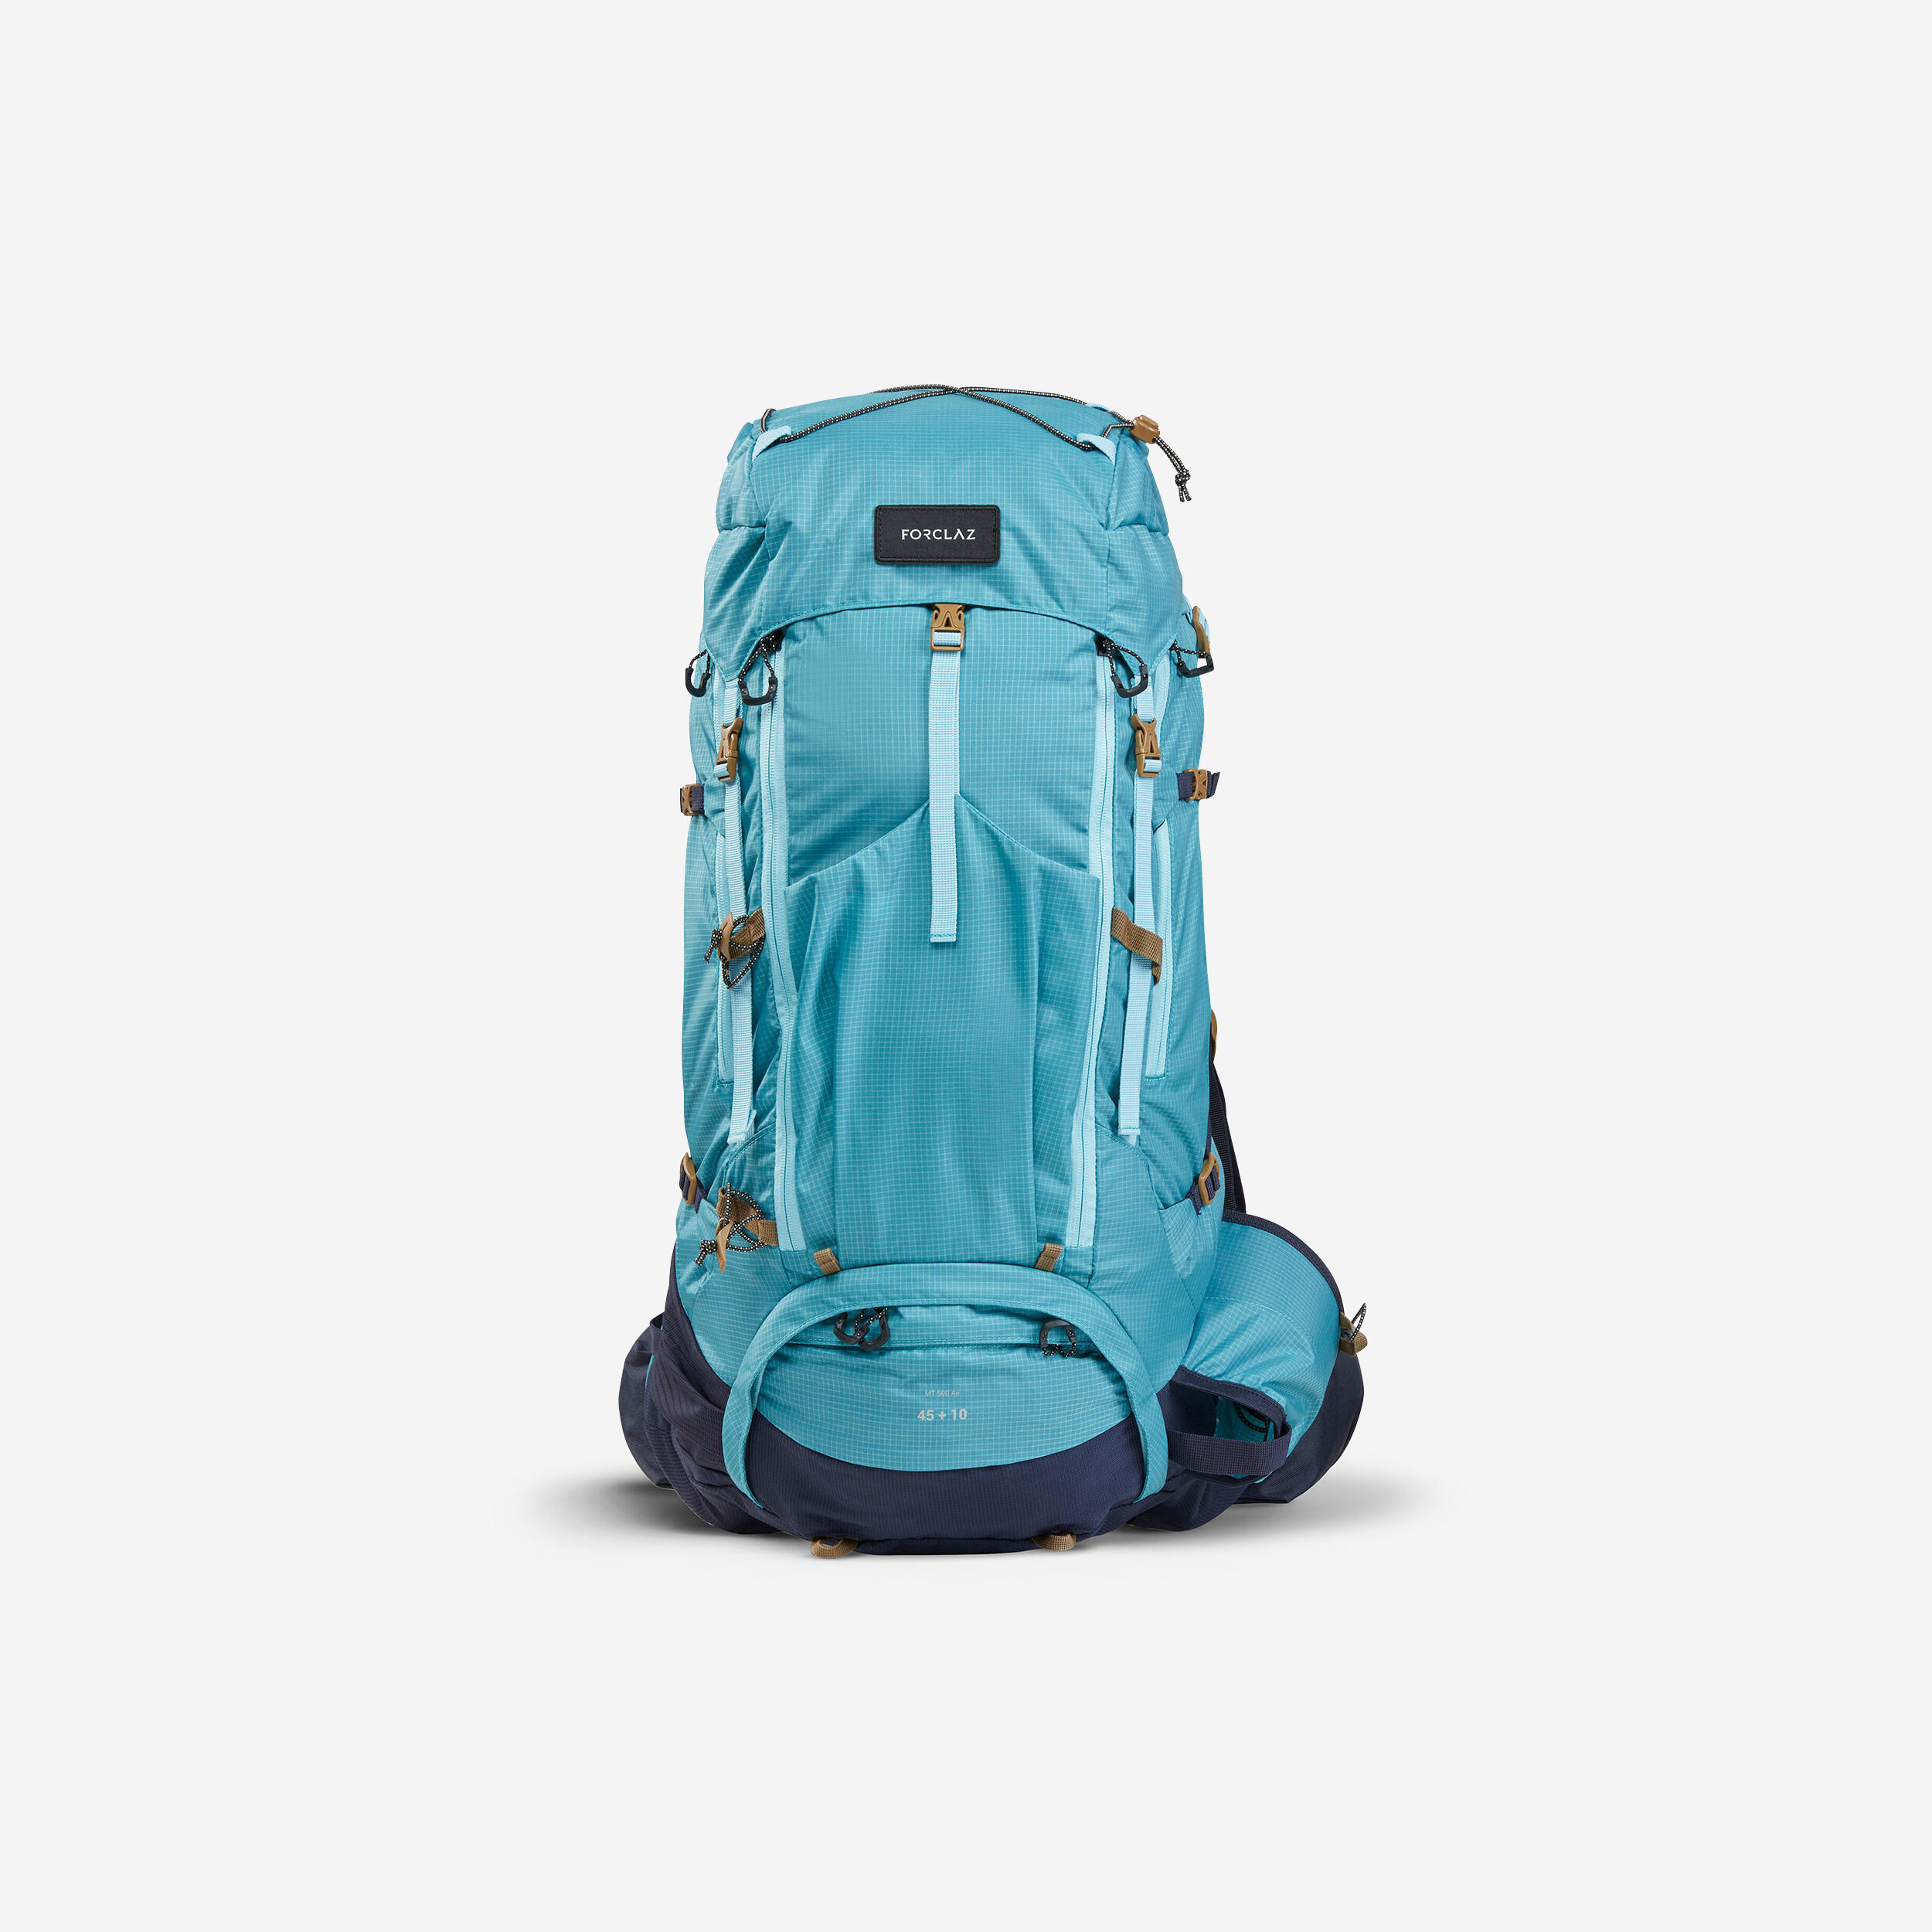 Women's Trekking Backpack 45+10 L - MT500 AIR 1/17